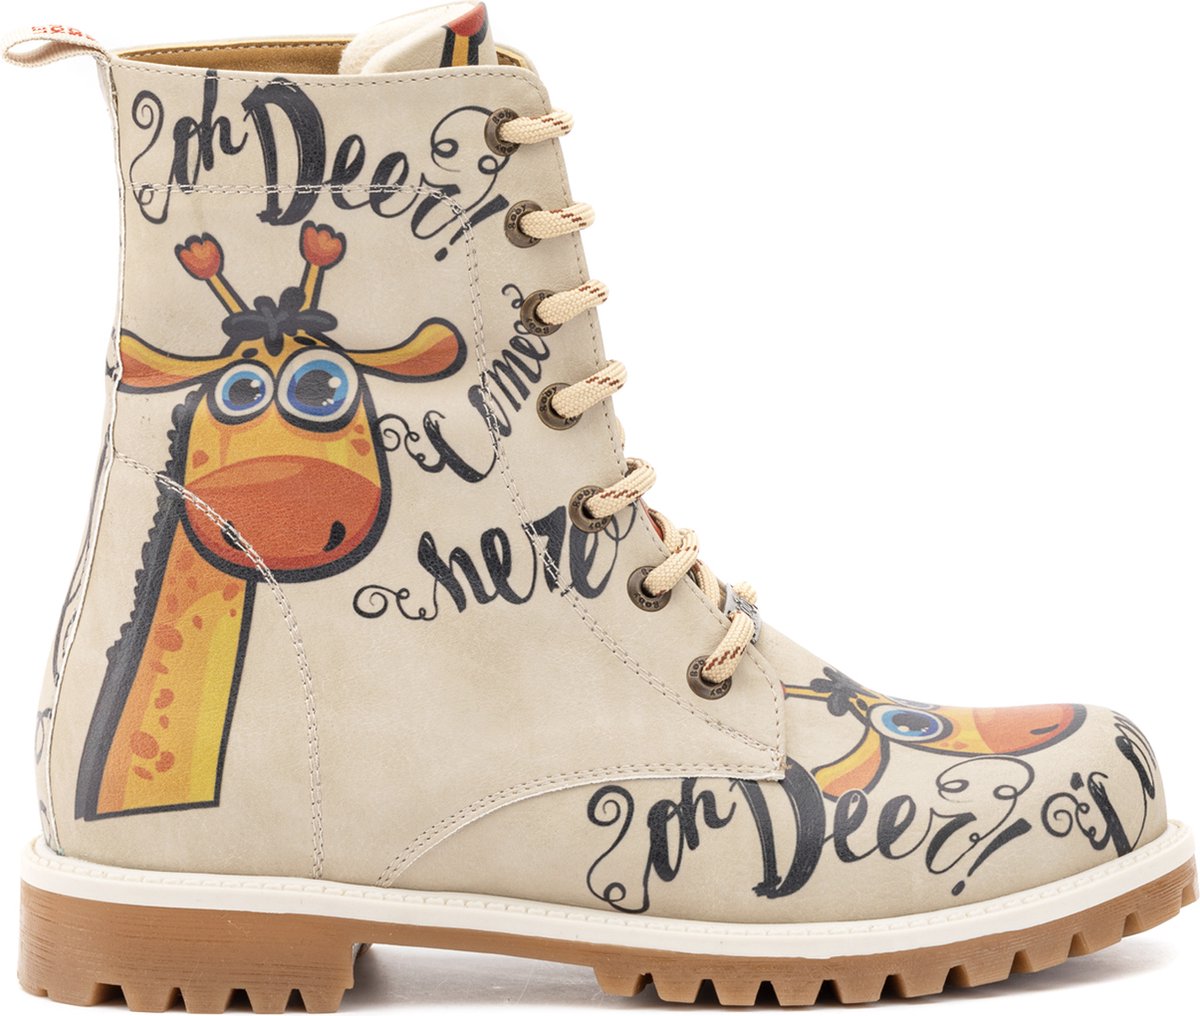 GOBY - Ooo My deer - Boots - Laars - Laarzen - Damesboots - Dames laarzen - Longboots - Handmade - Maat 35